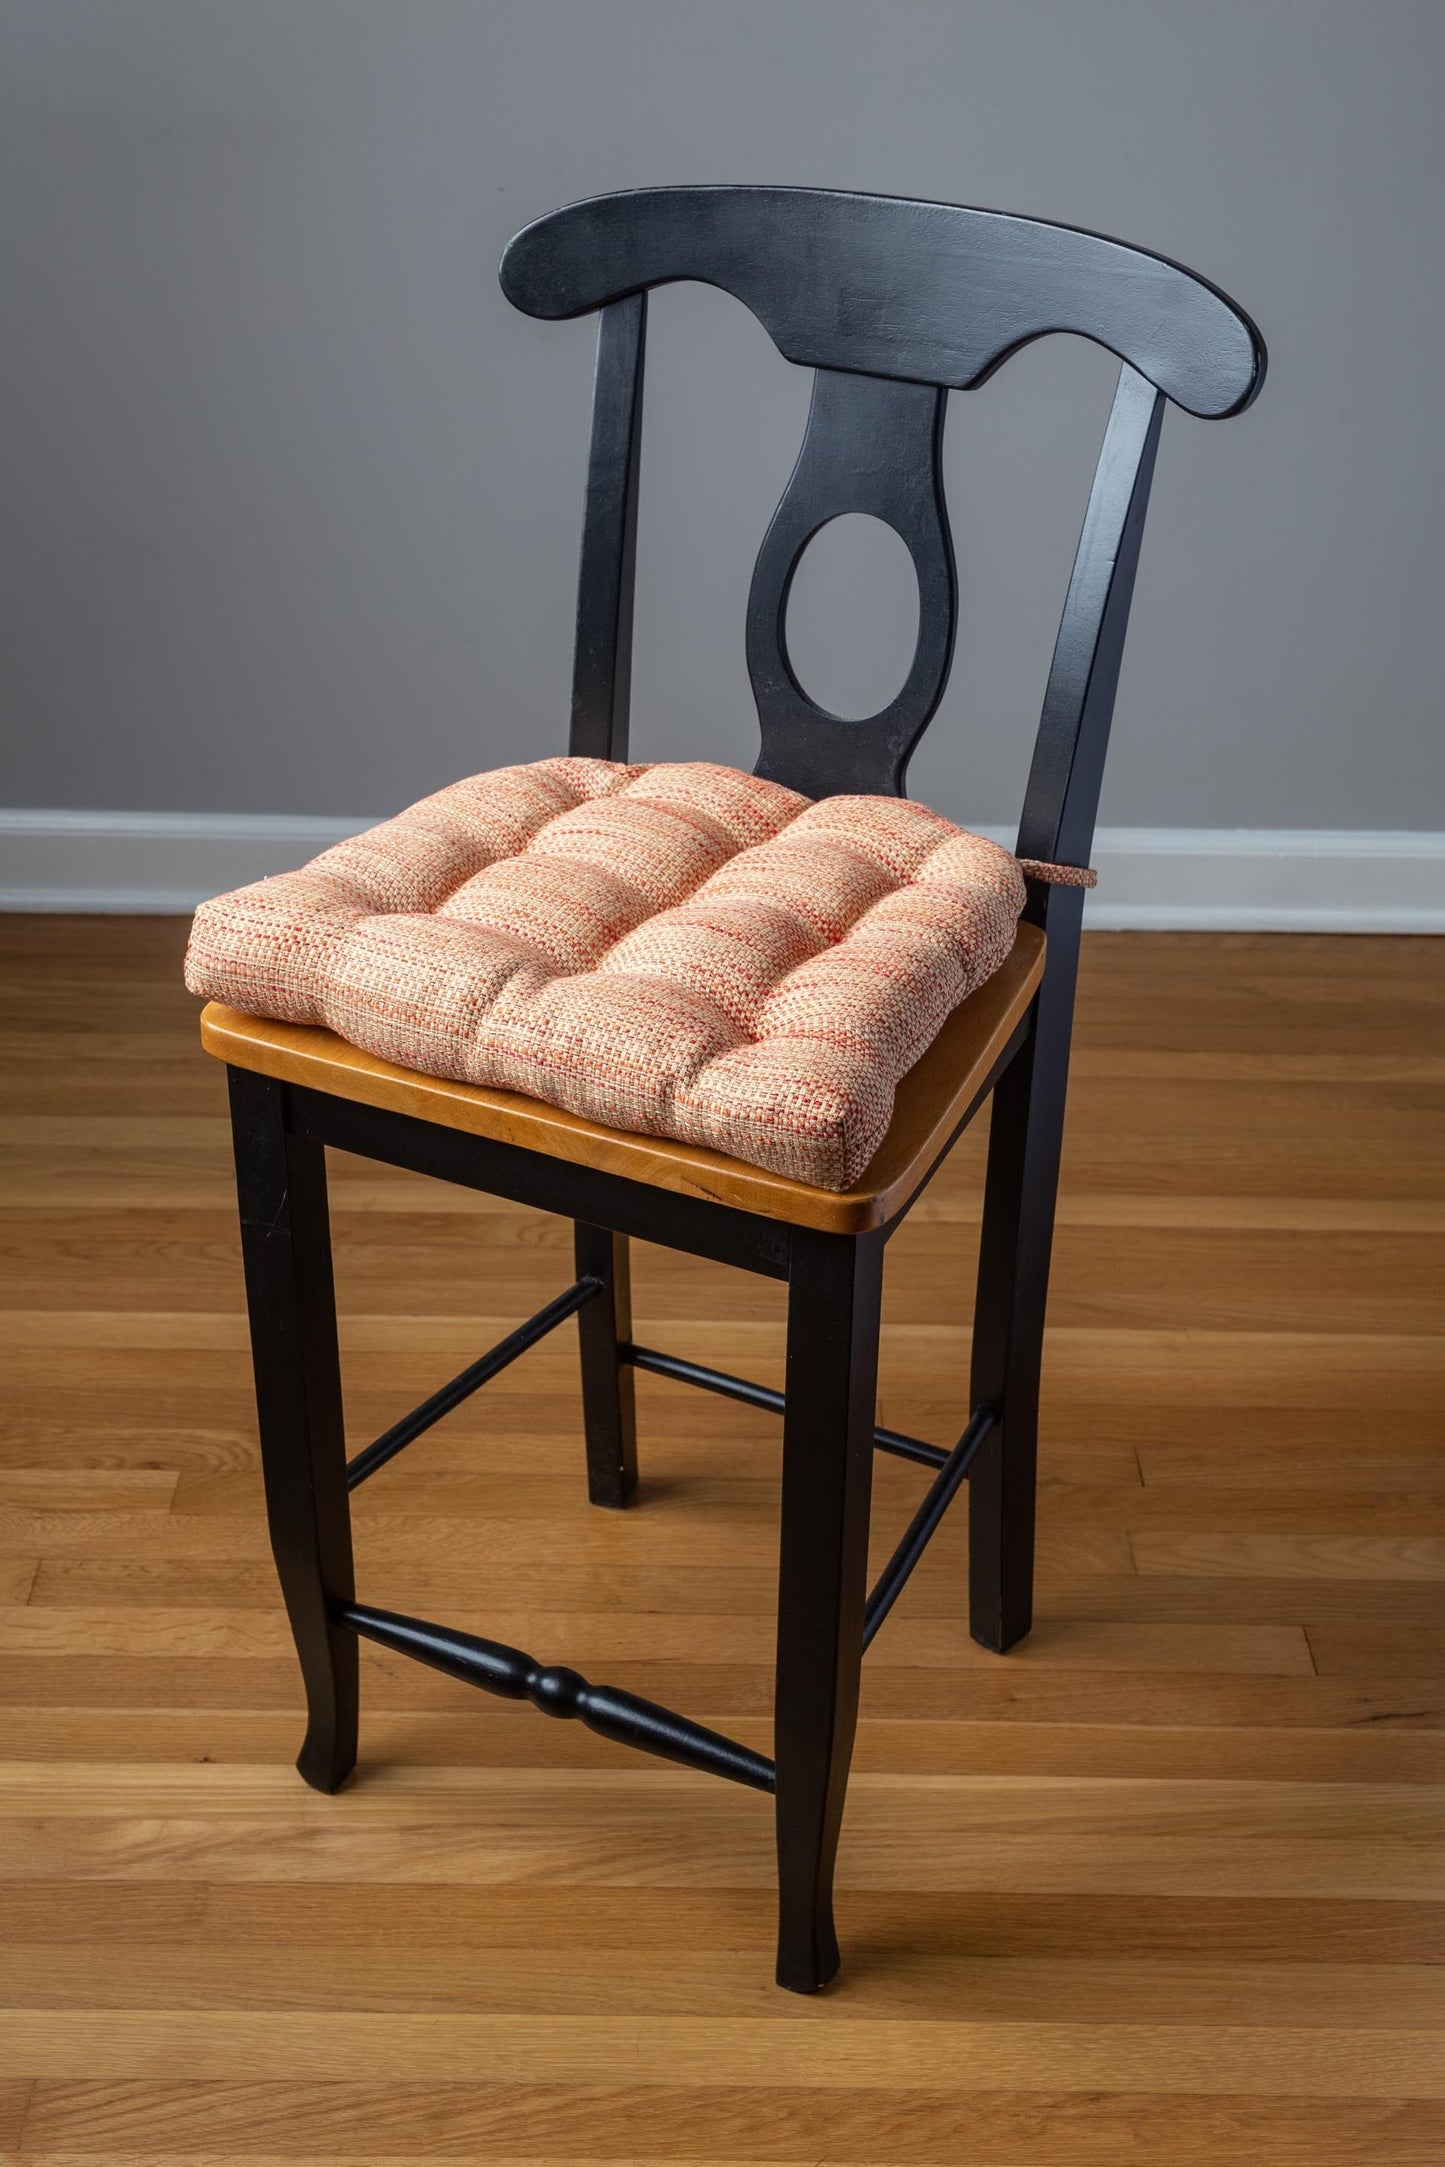 Brisbane Salsa Tweed Dining Chair Cushion - Barnett home Decor - Tan & Red